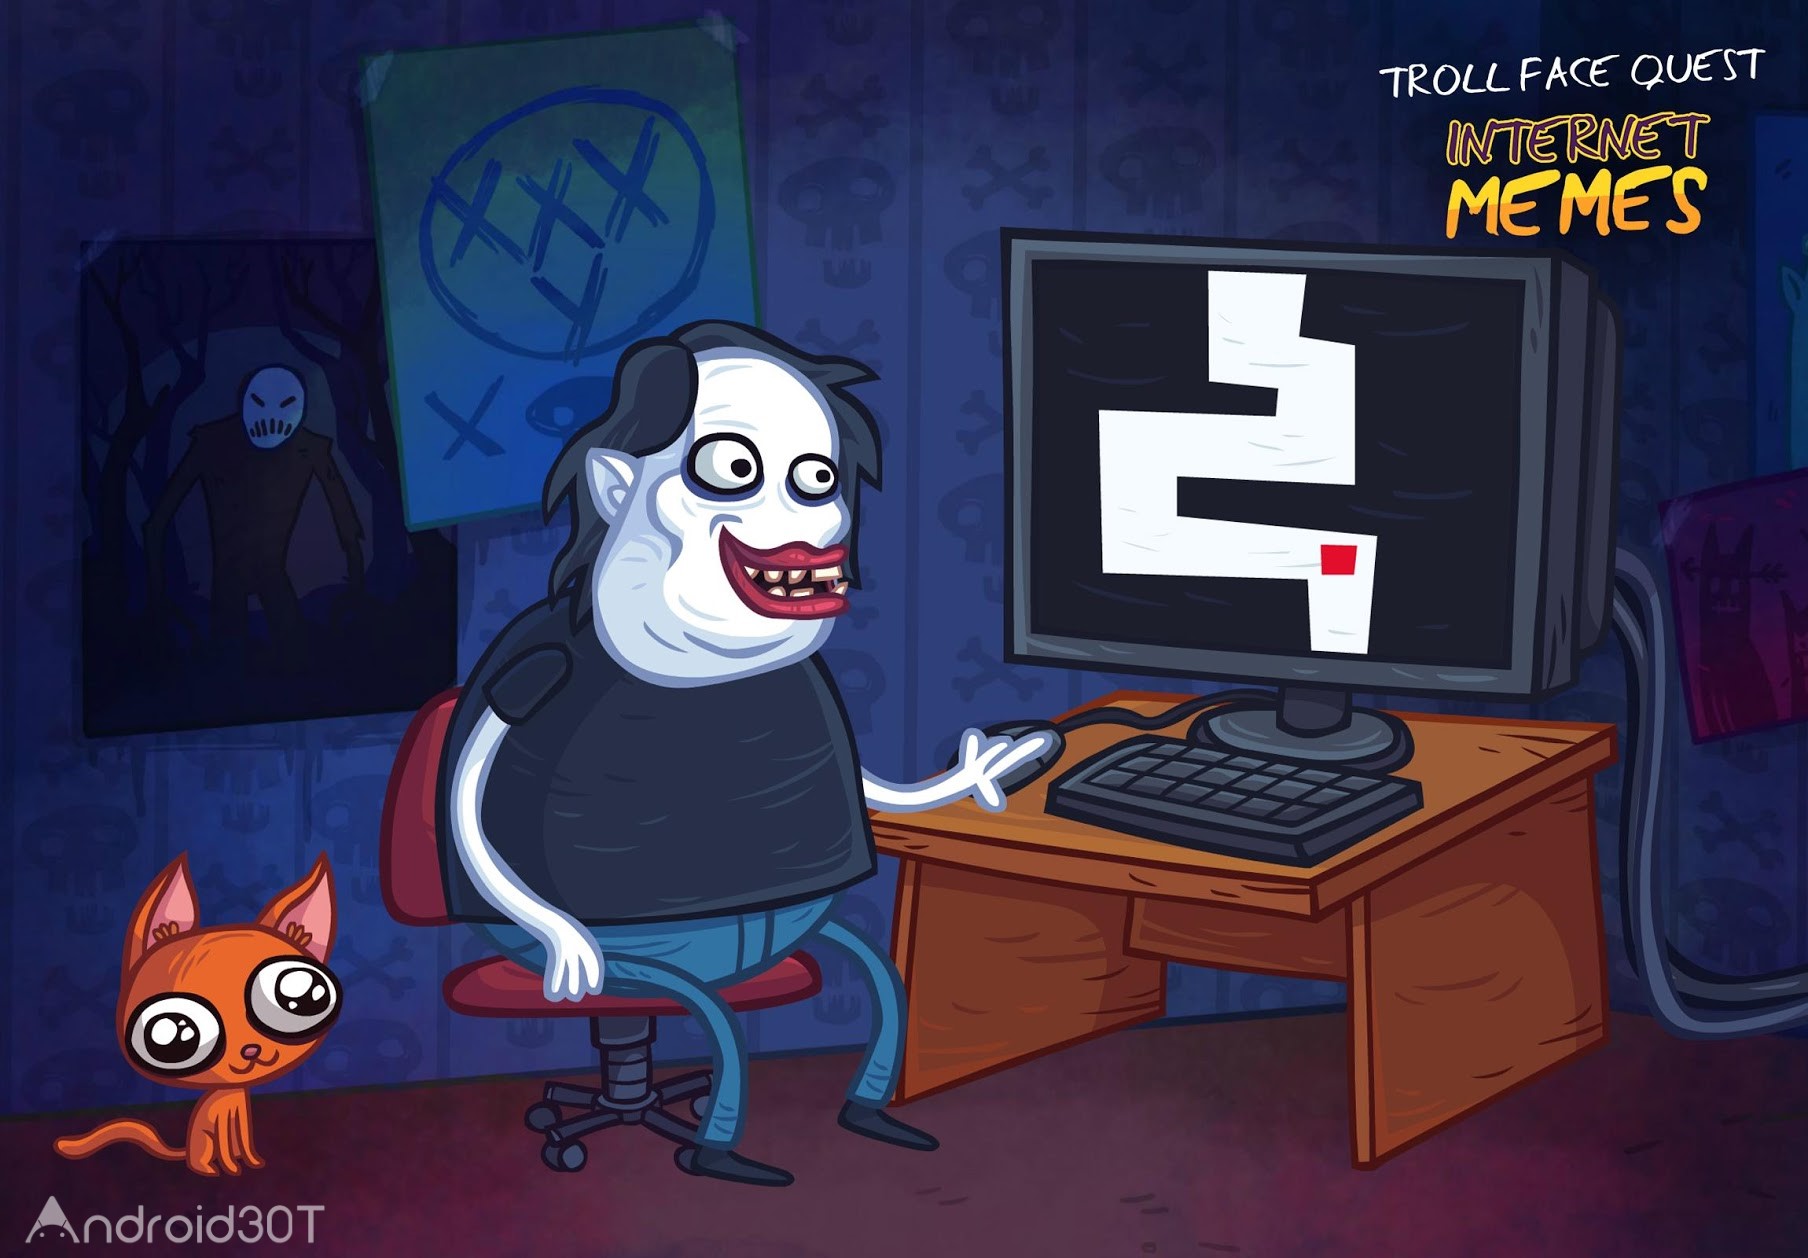 دانلود Troll Face Quest Internet Memes 222.7.3 – بازی پازلی شخصیت های ترولی اندروید